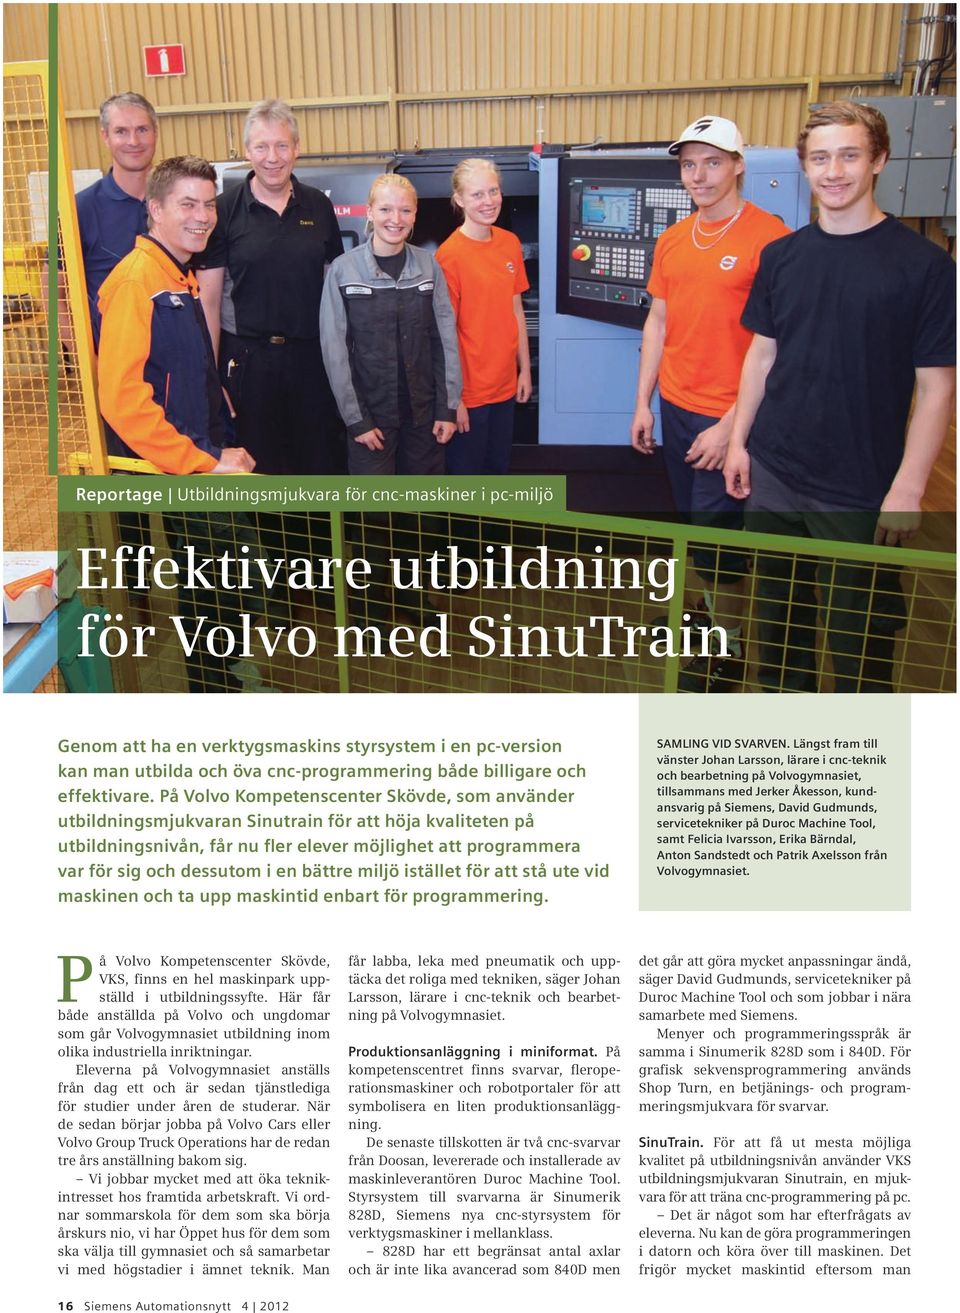 På Volvo Kompetenscenter Skövde, som använder utbildningsmjukvaran Sinutrain för att höja kvaliteten på utbildningsnivån, får nu fler elever möjlighet att programmera var för sig och dessutom i en